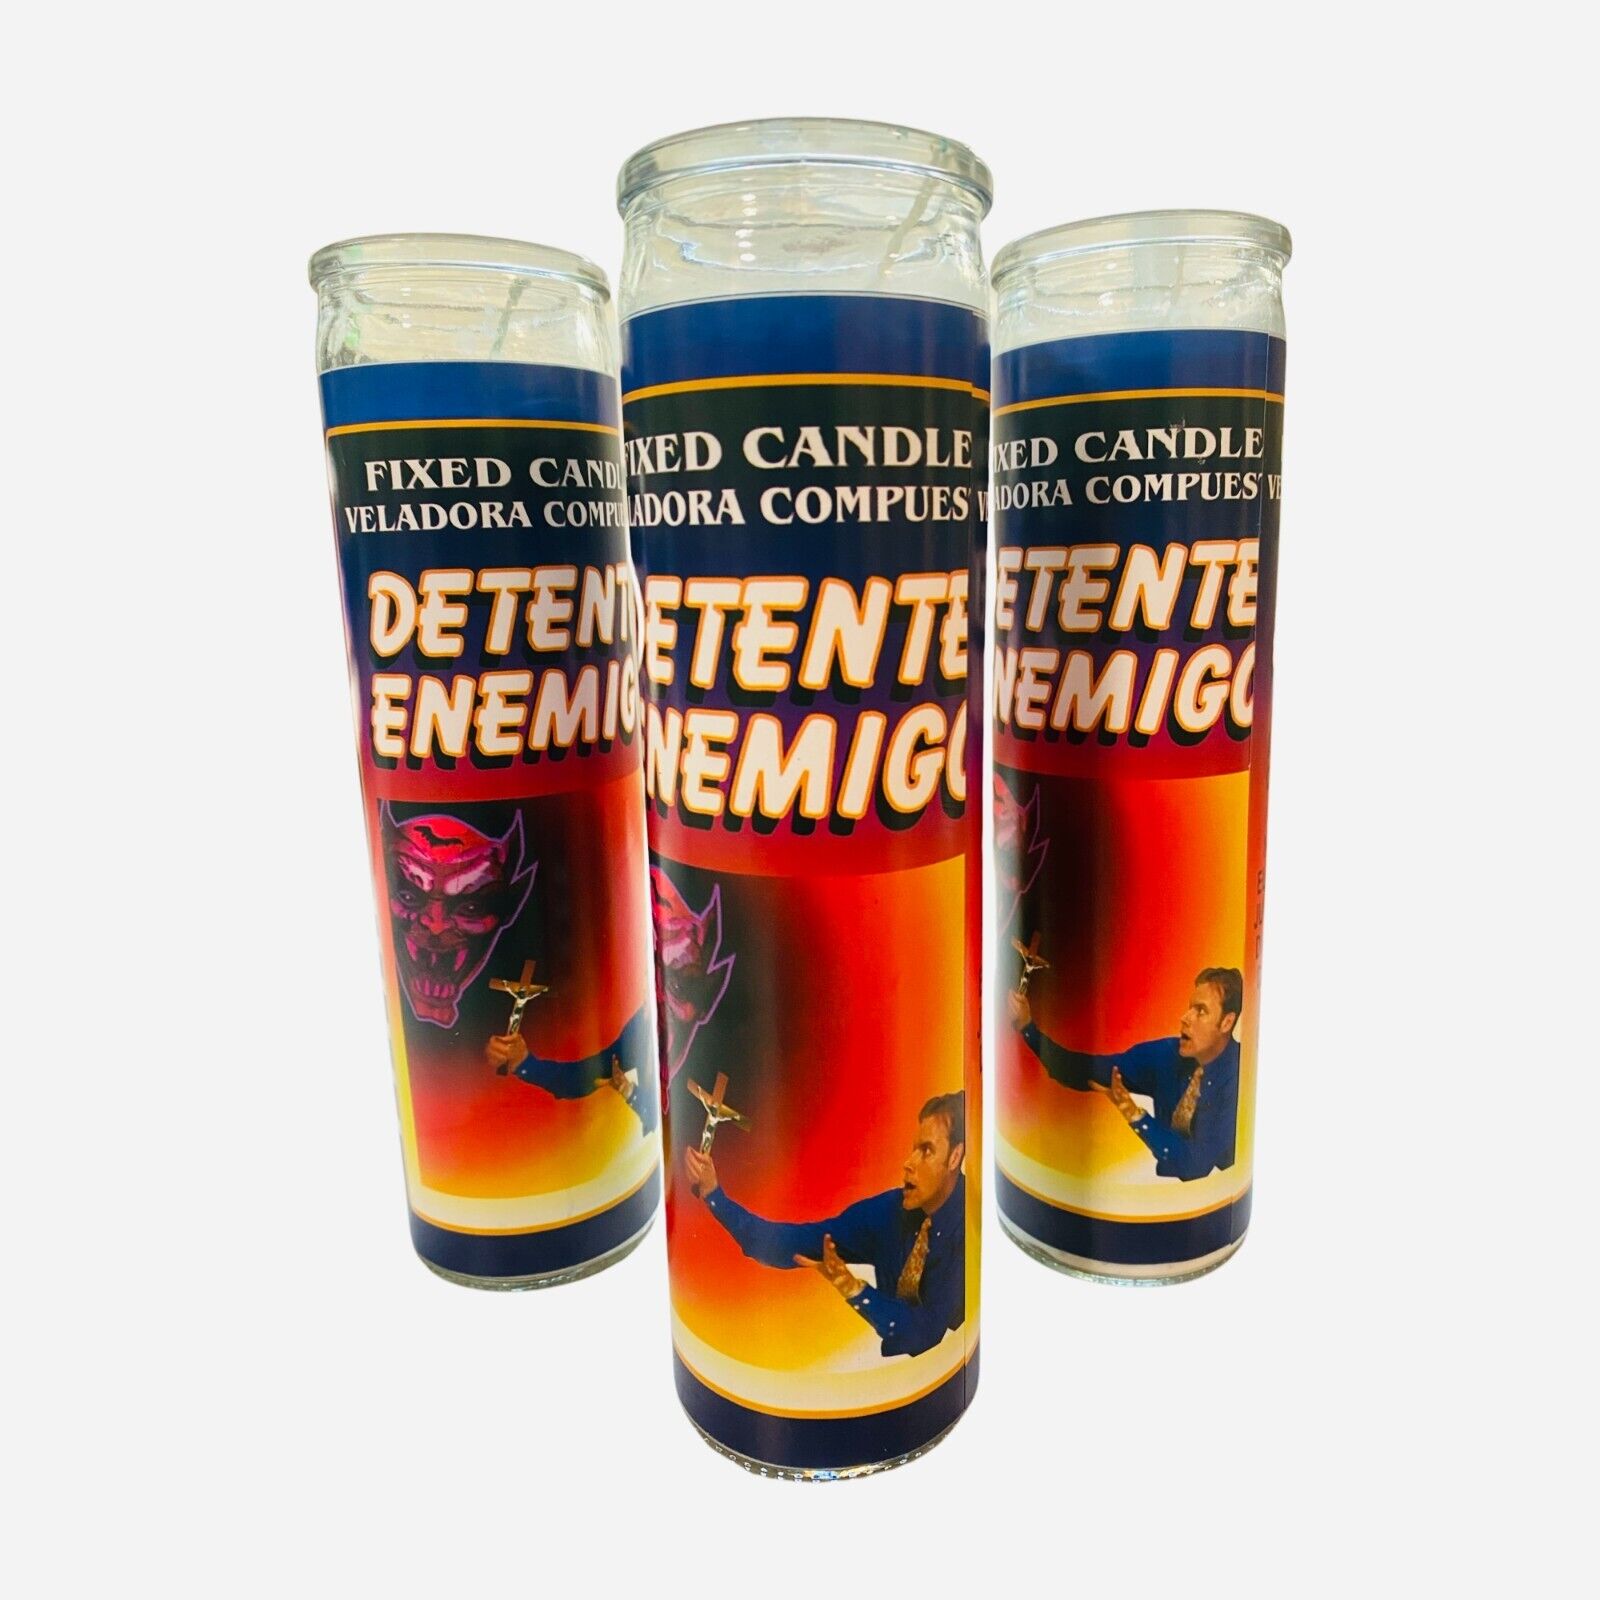 12x Set, DETENTE ENEMIGO Veladora, Stop Enemy Candle, contra enemigos. wholesale